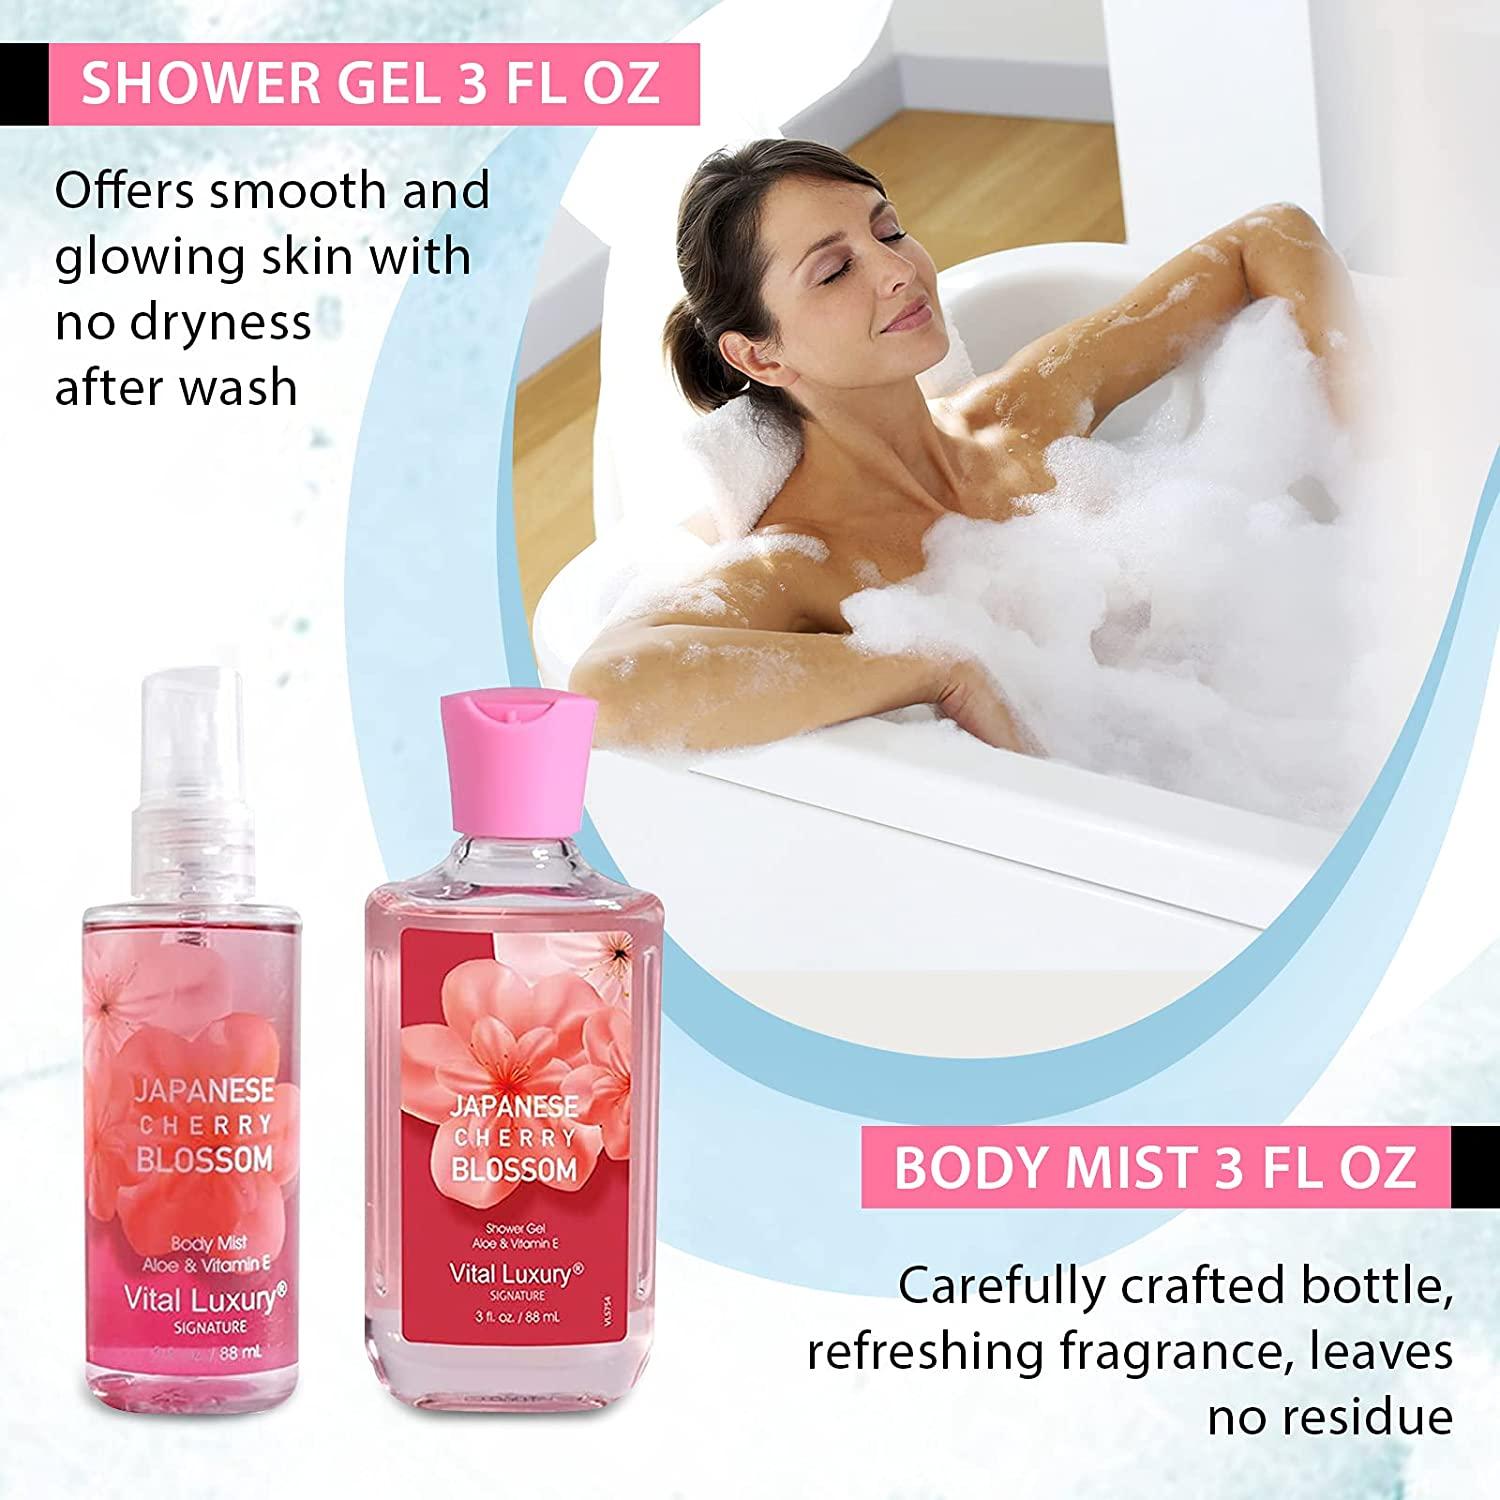 Bath and Body - Fragrance